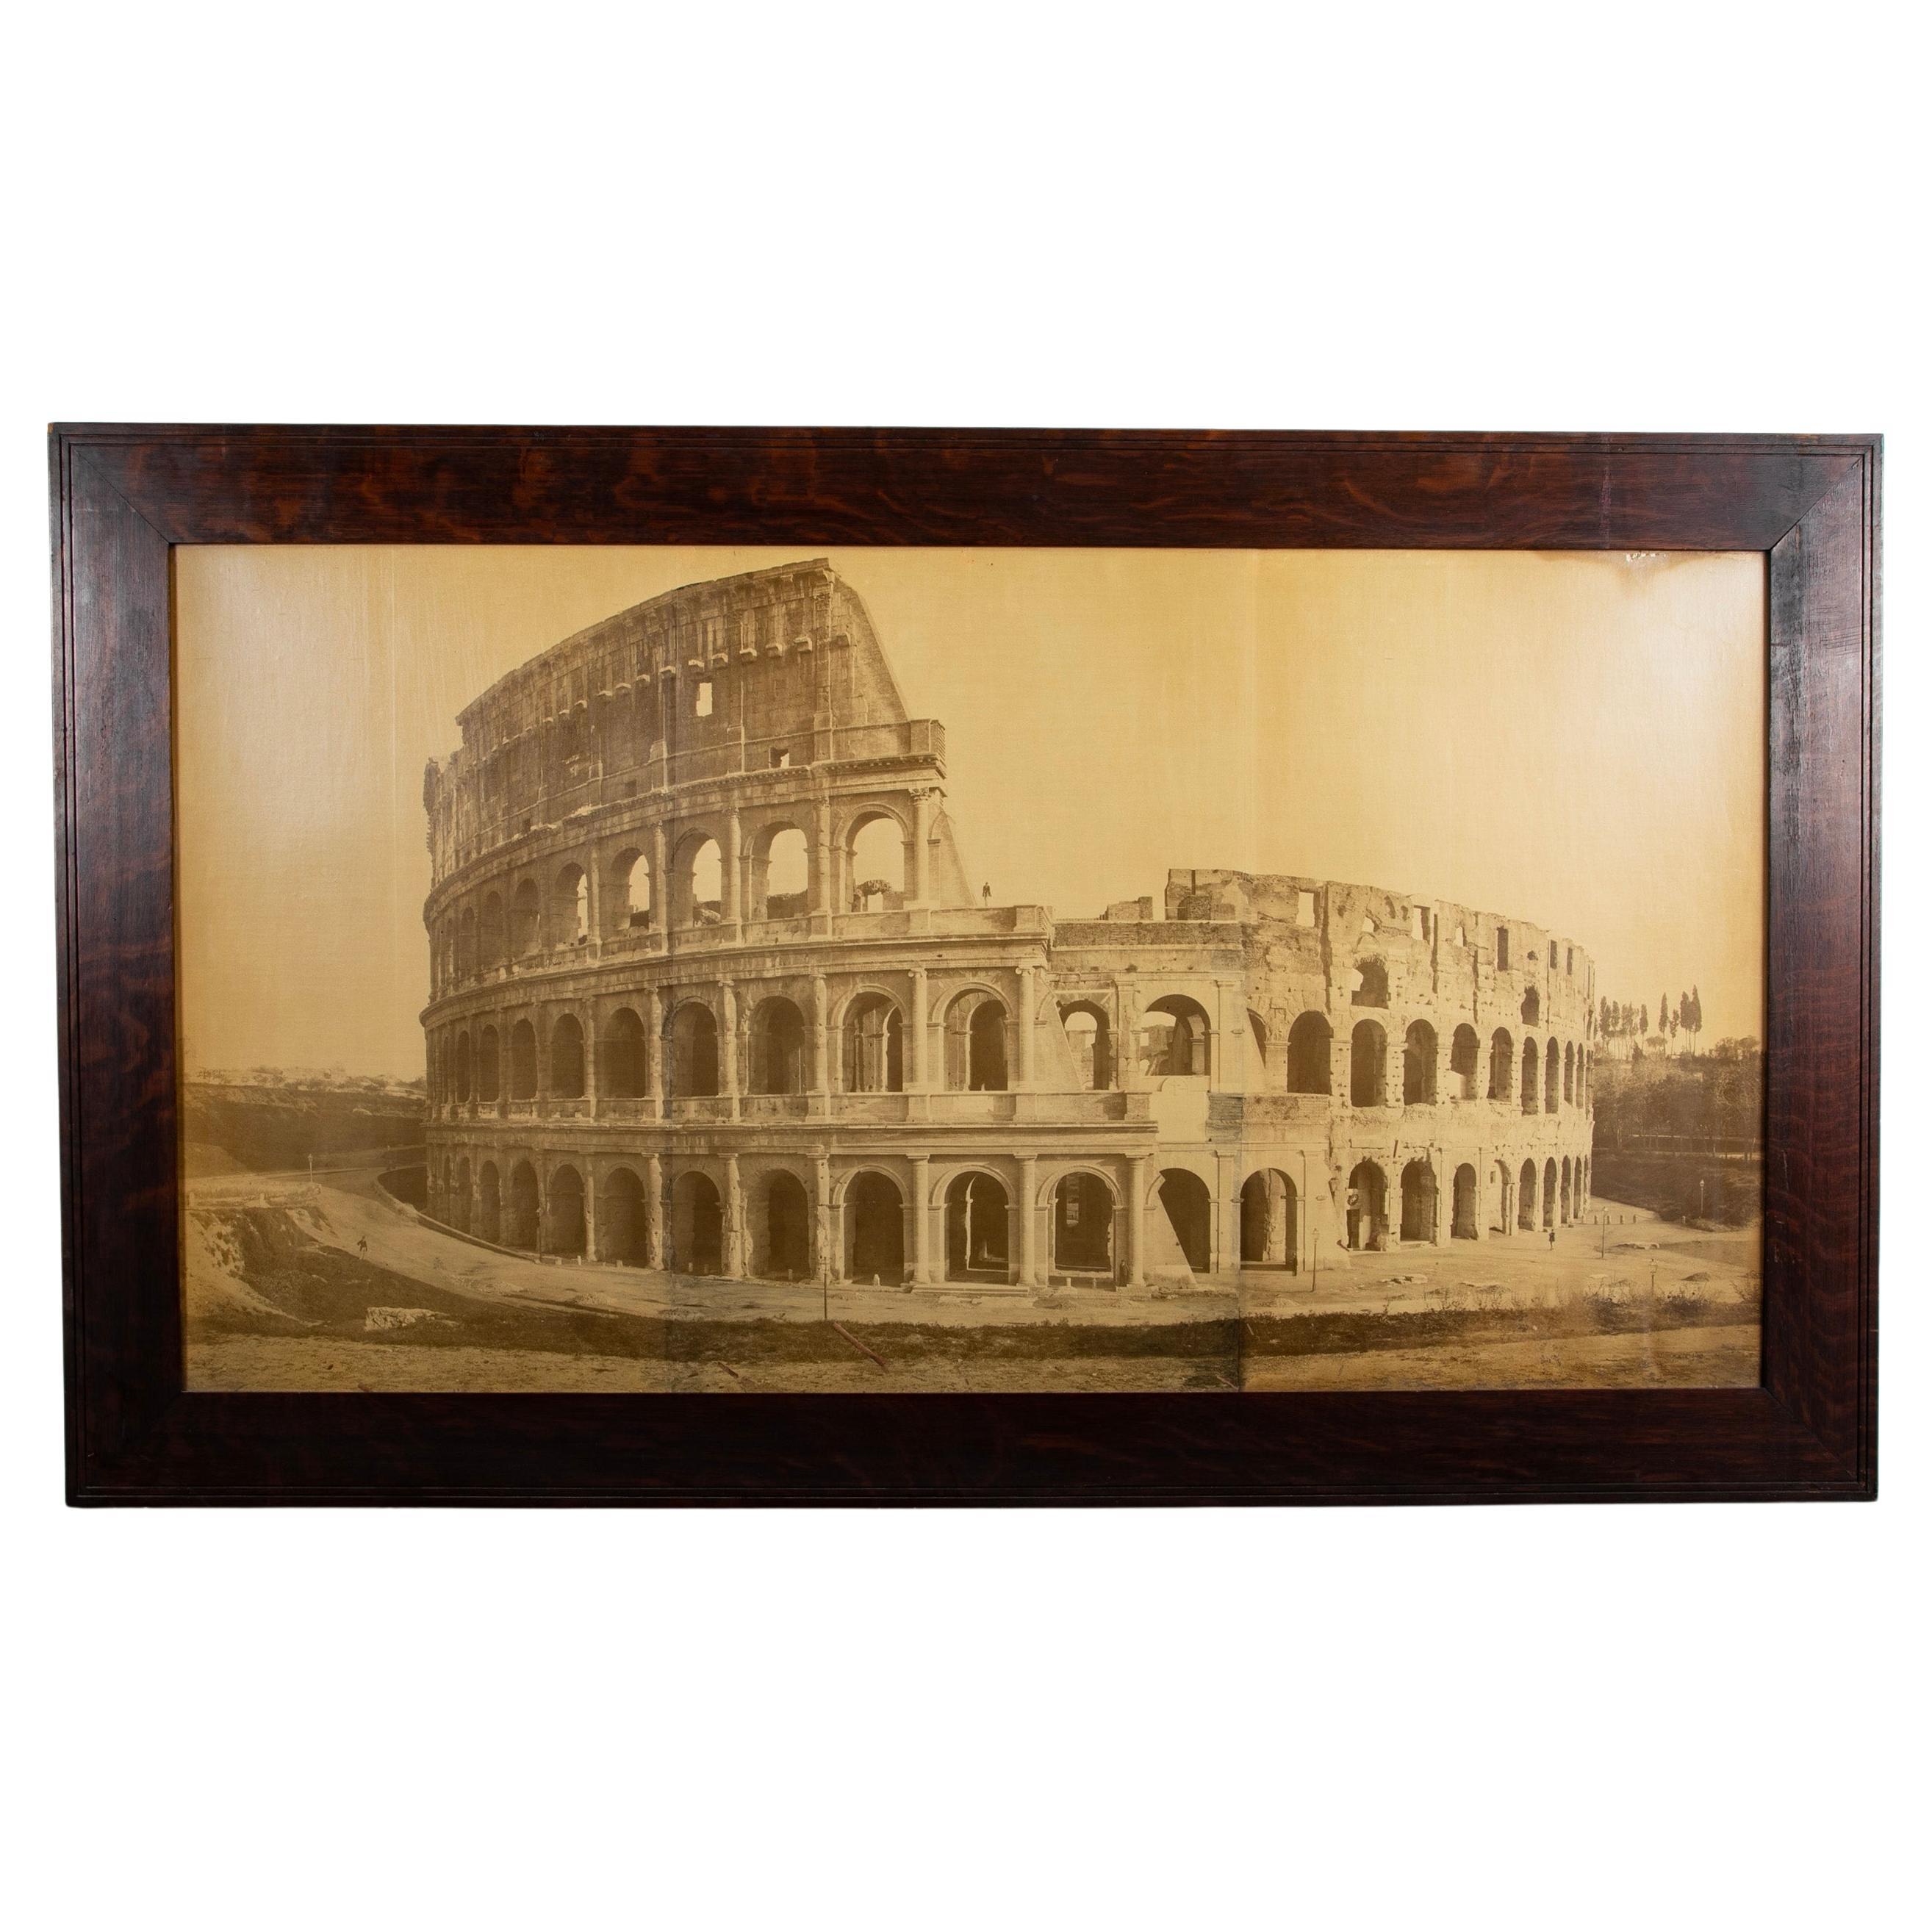 Photo du 19ème siècle du Colisée romain, grande échelle de 68 pouces de large.